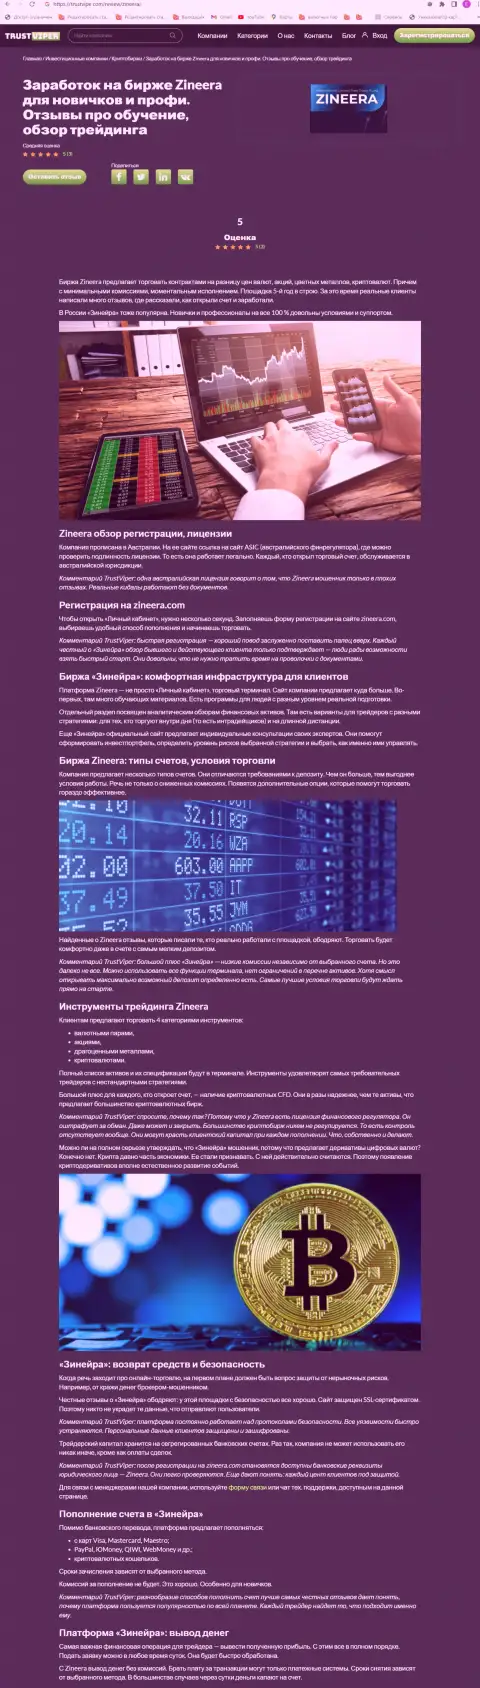 Обзор деятельности криптовалютной биржевой организации Зинеера Ком на web-сайте траствайпер ком